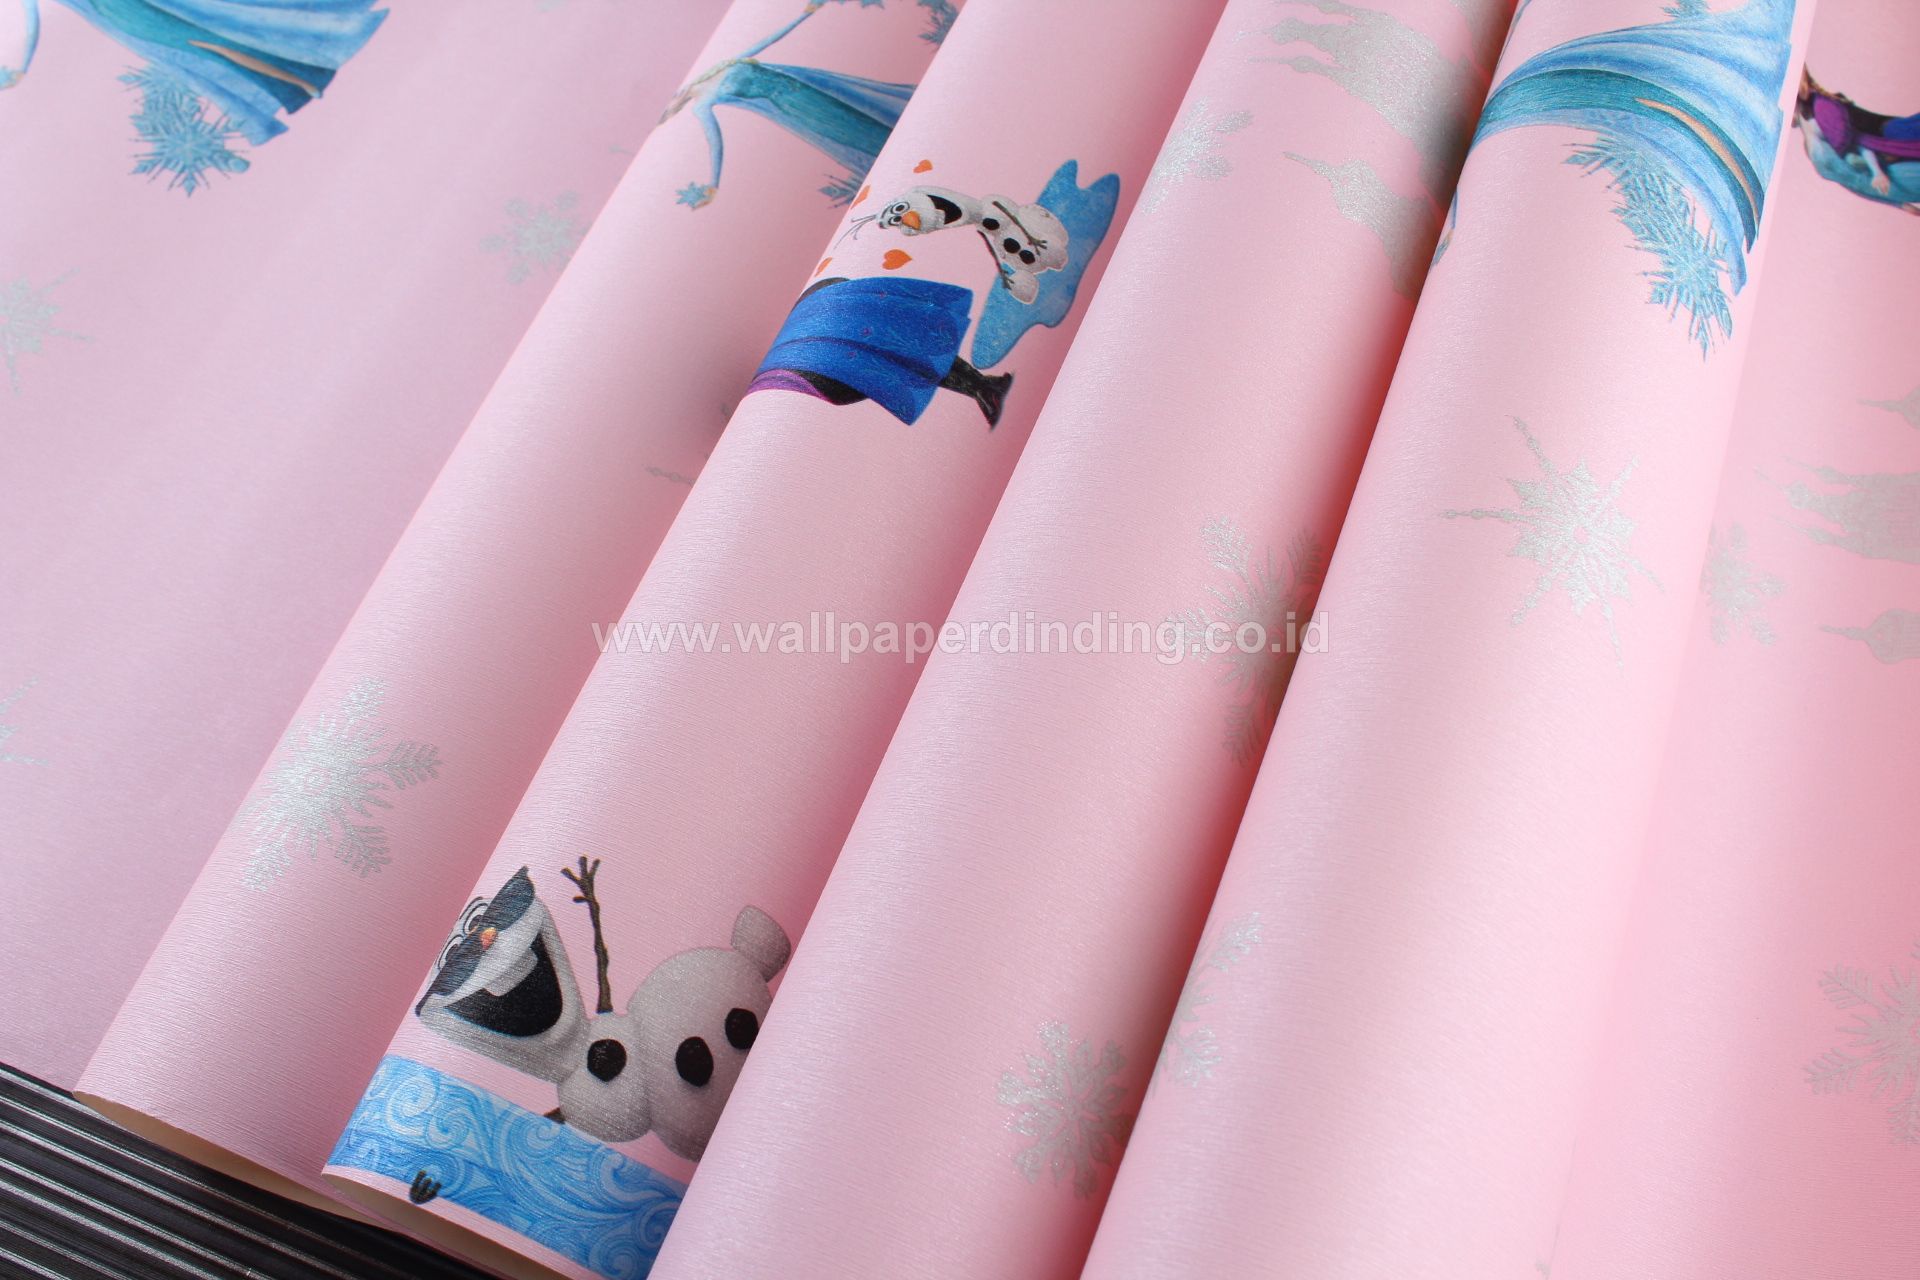 Wallpaper Dinding Anak Frozen Pink 4419-1 - Girl - HD Wallpaper 